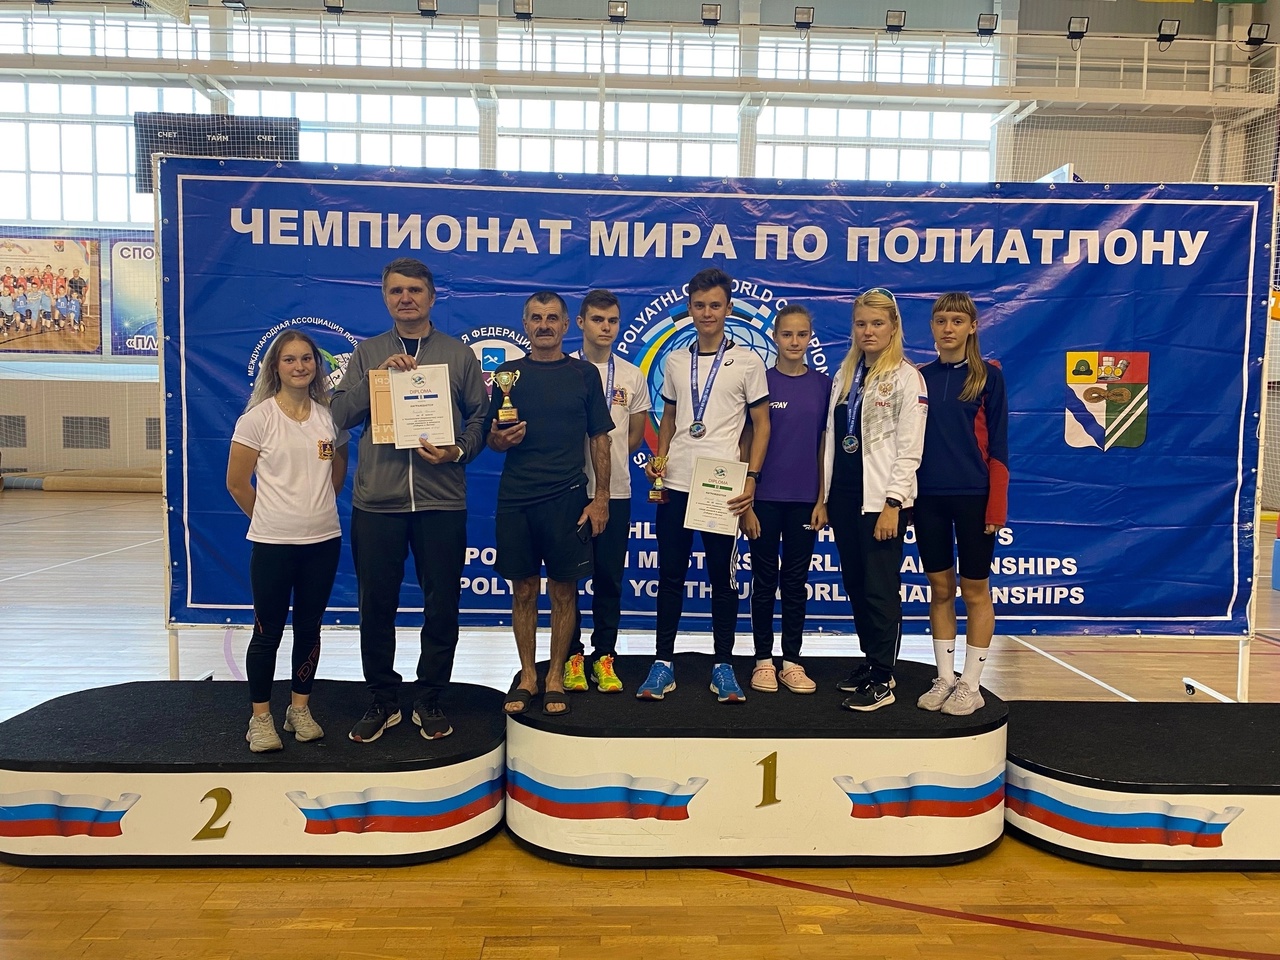 Брянские спортсмены привезли россыпь медалей с чемпионата мира по полиатлону